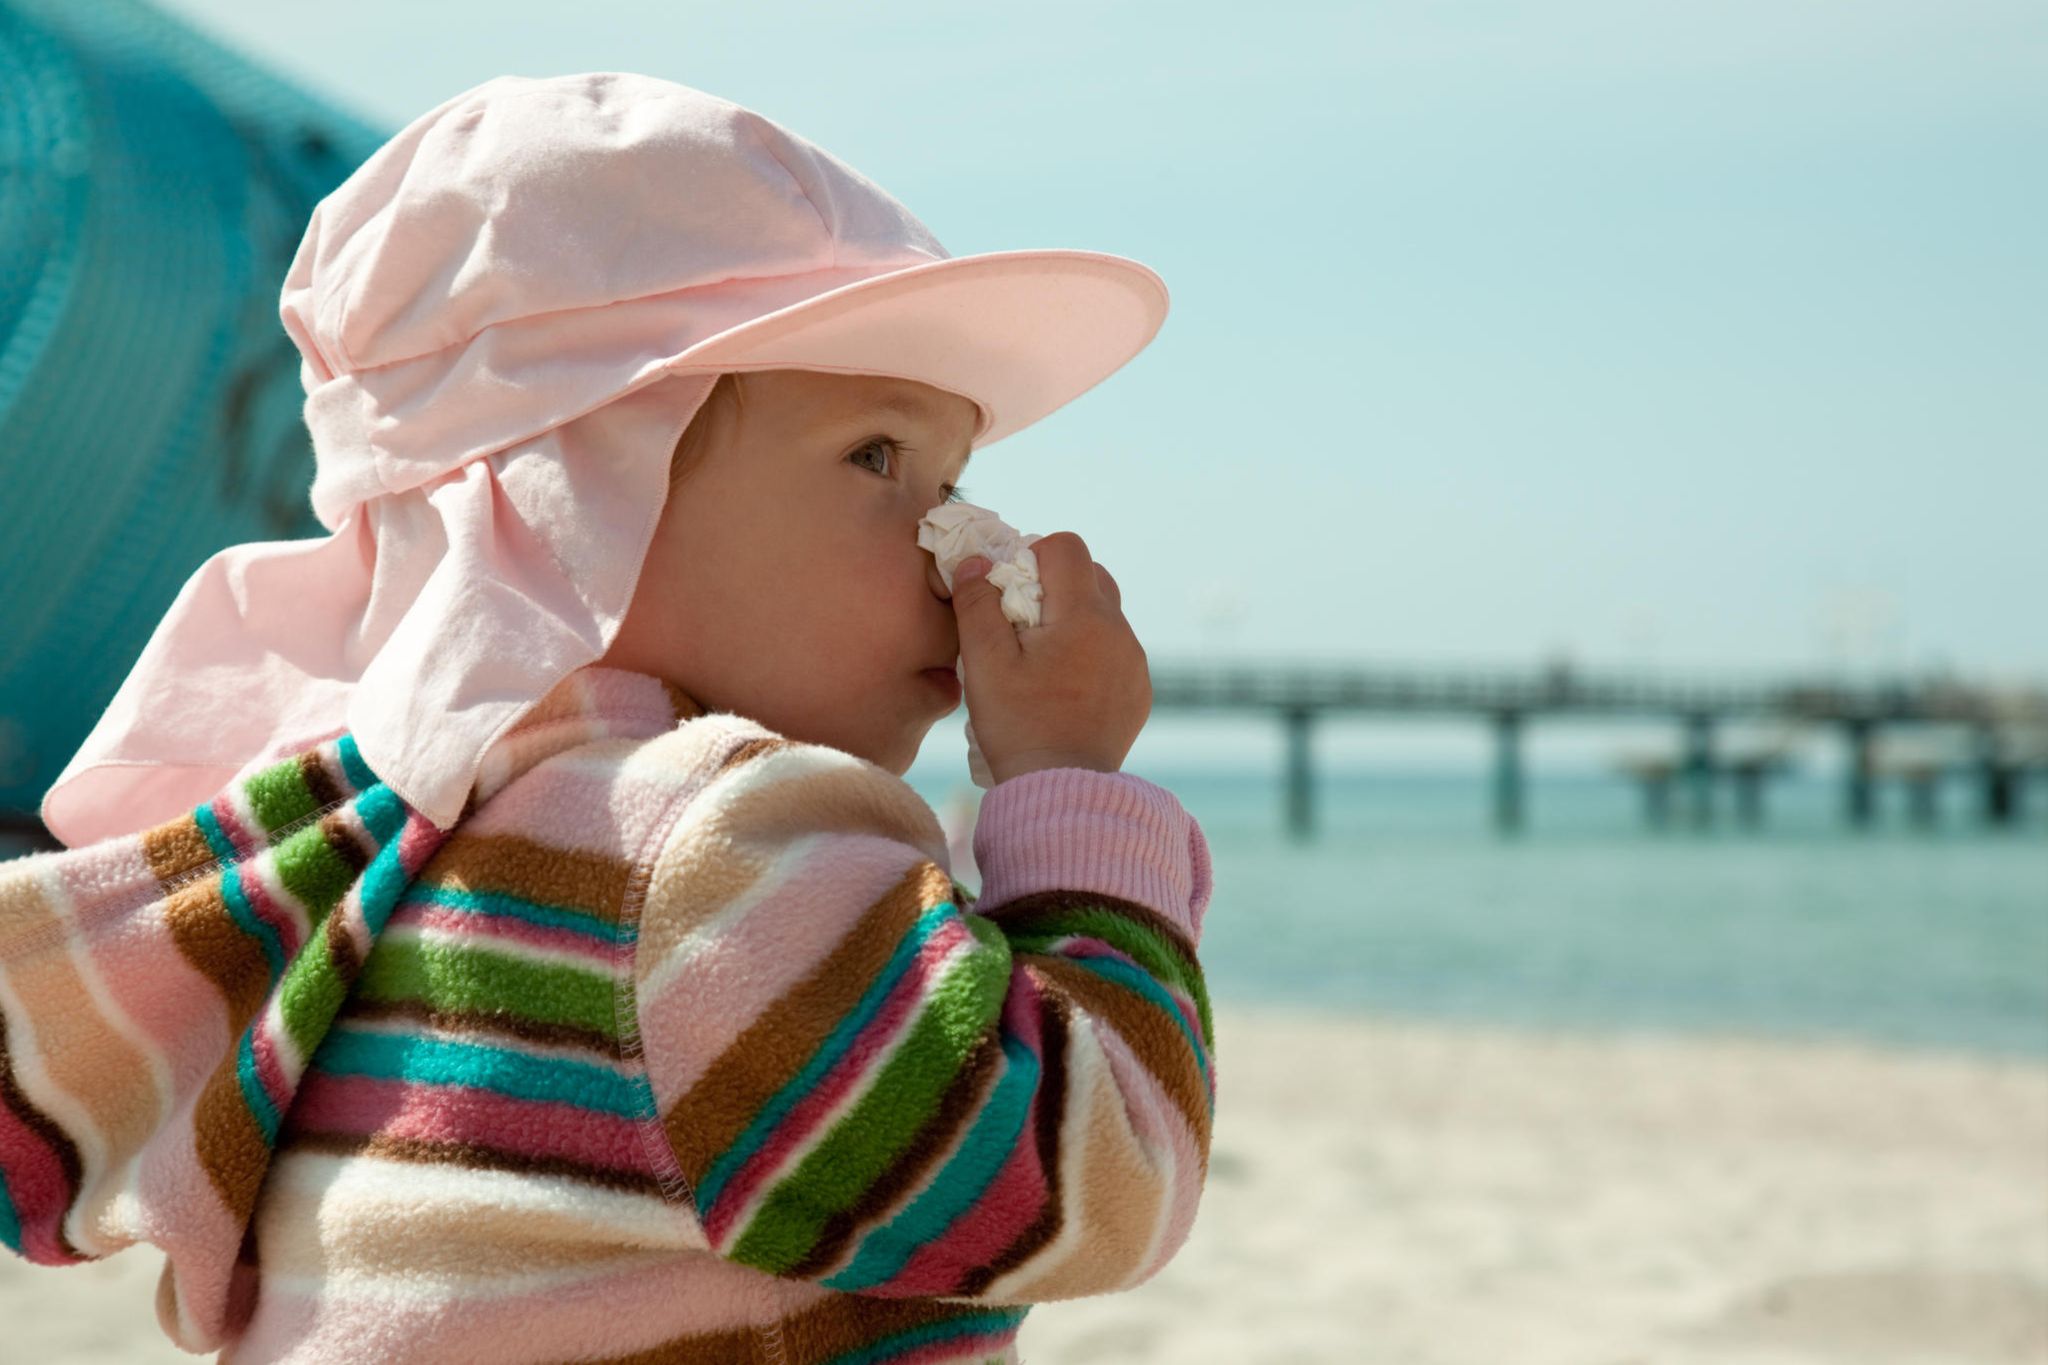 Reiseapotheke für Baby und Kind - Was gehört rein? - Wunschfee